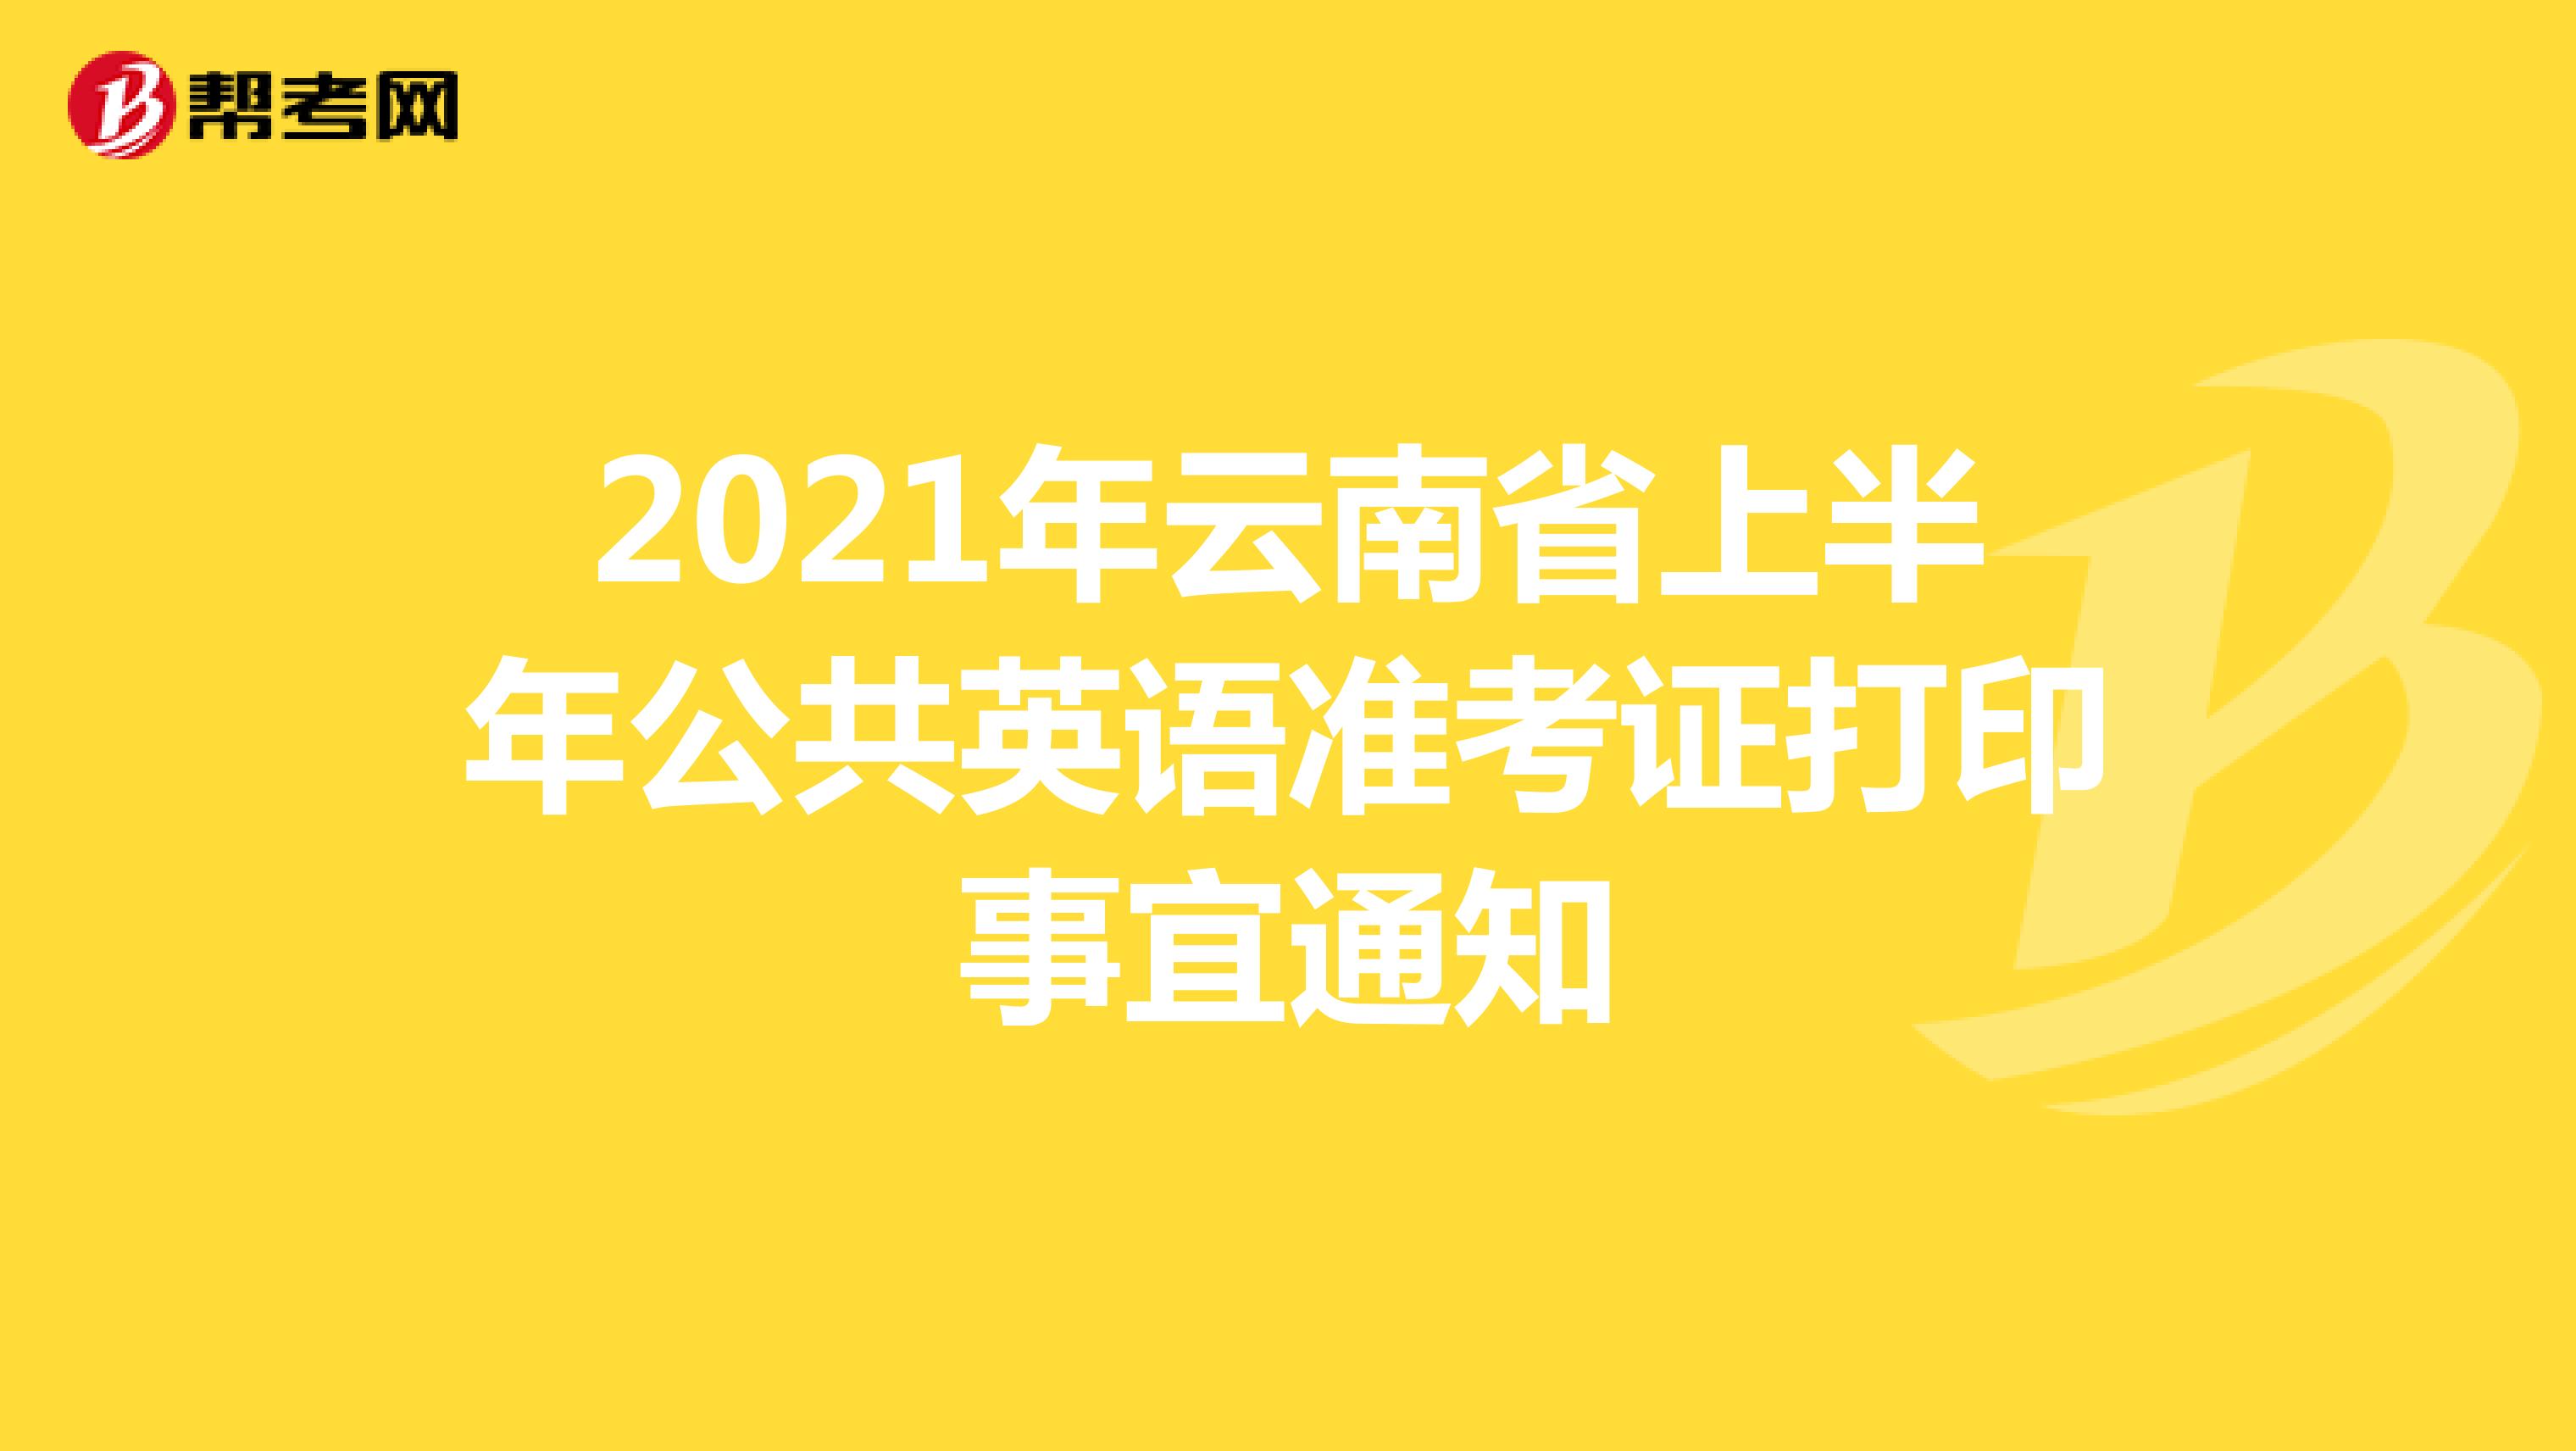 2021年云南省上半年公共英语准考证打印事宜通知